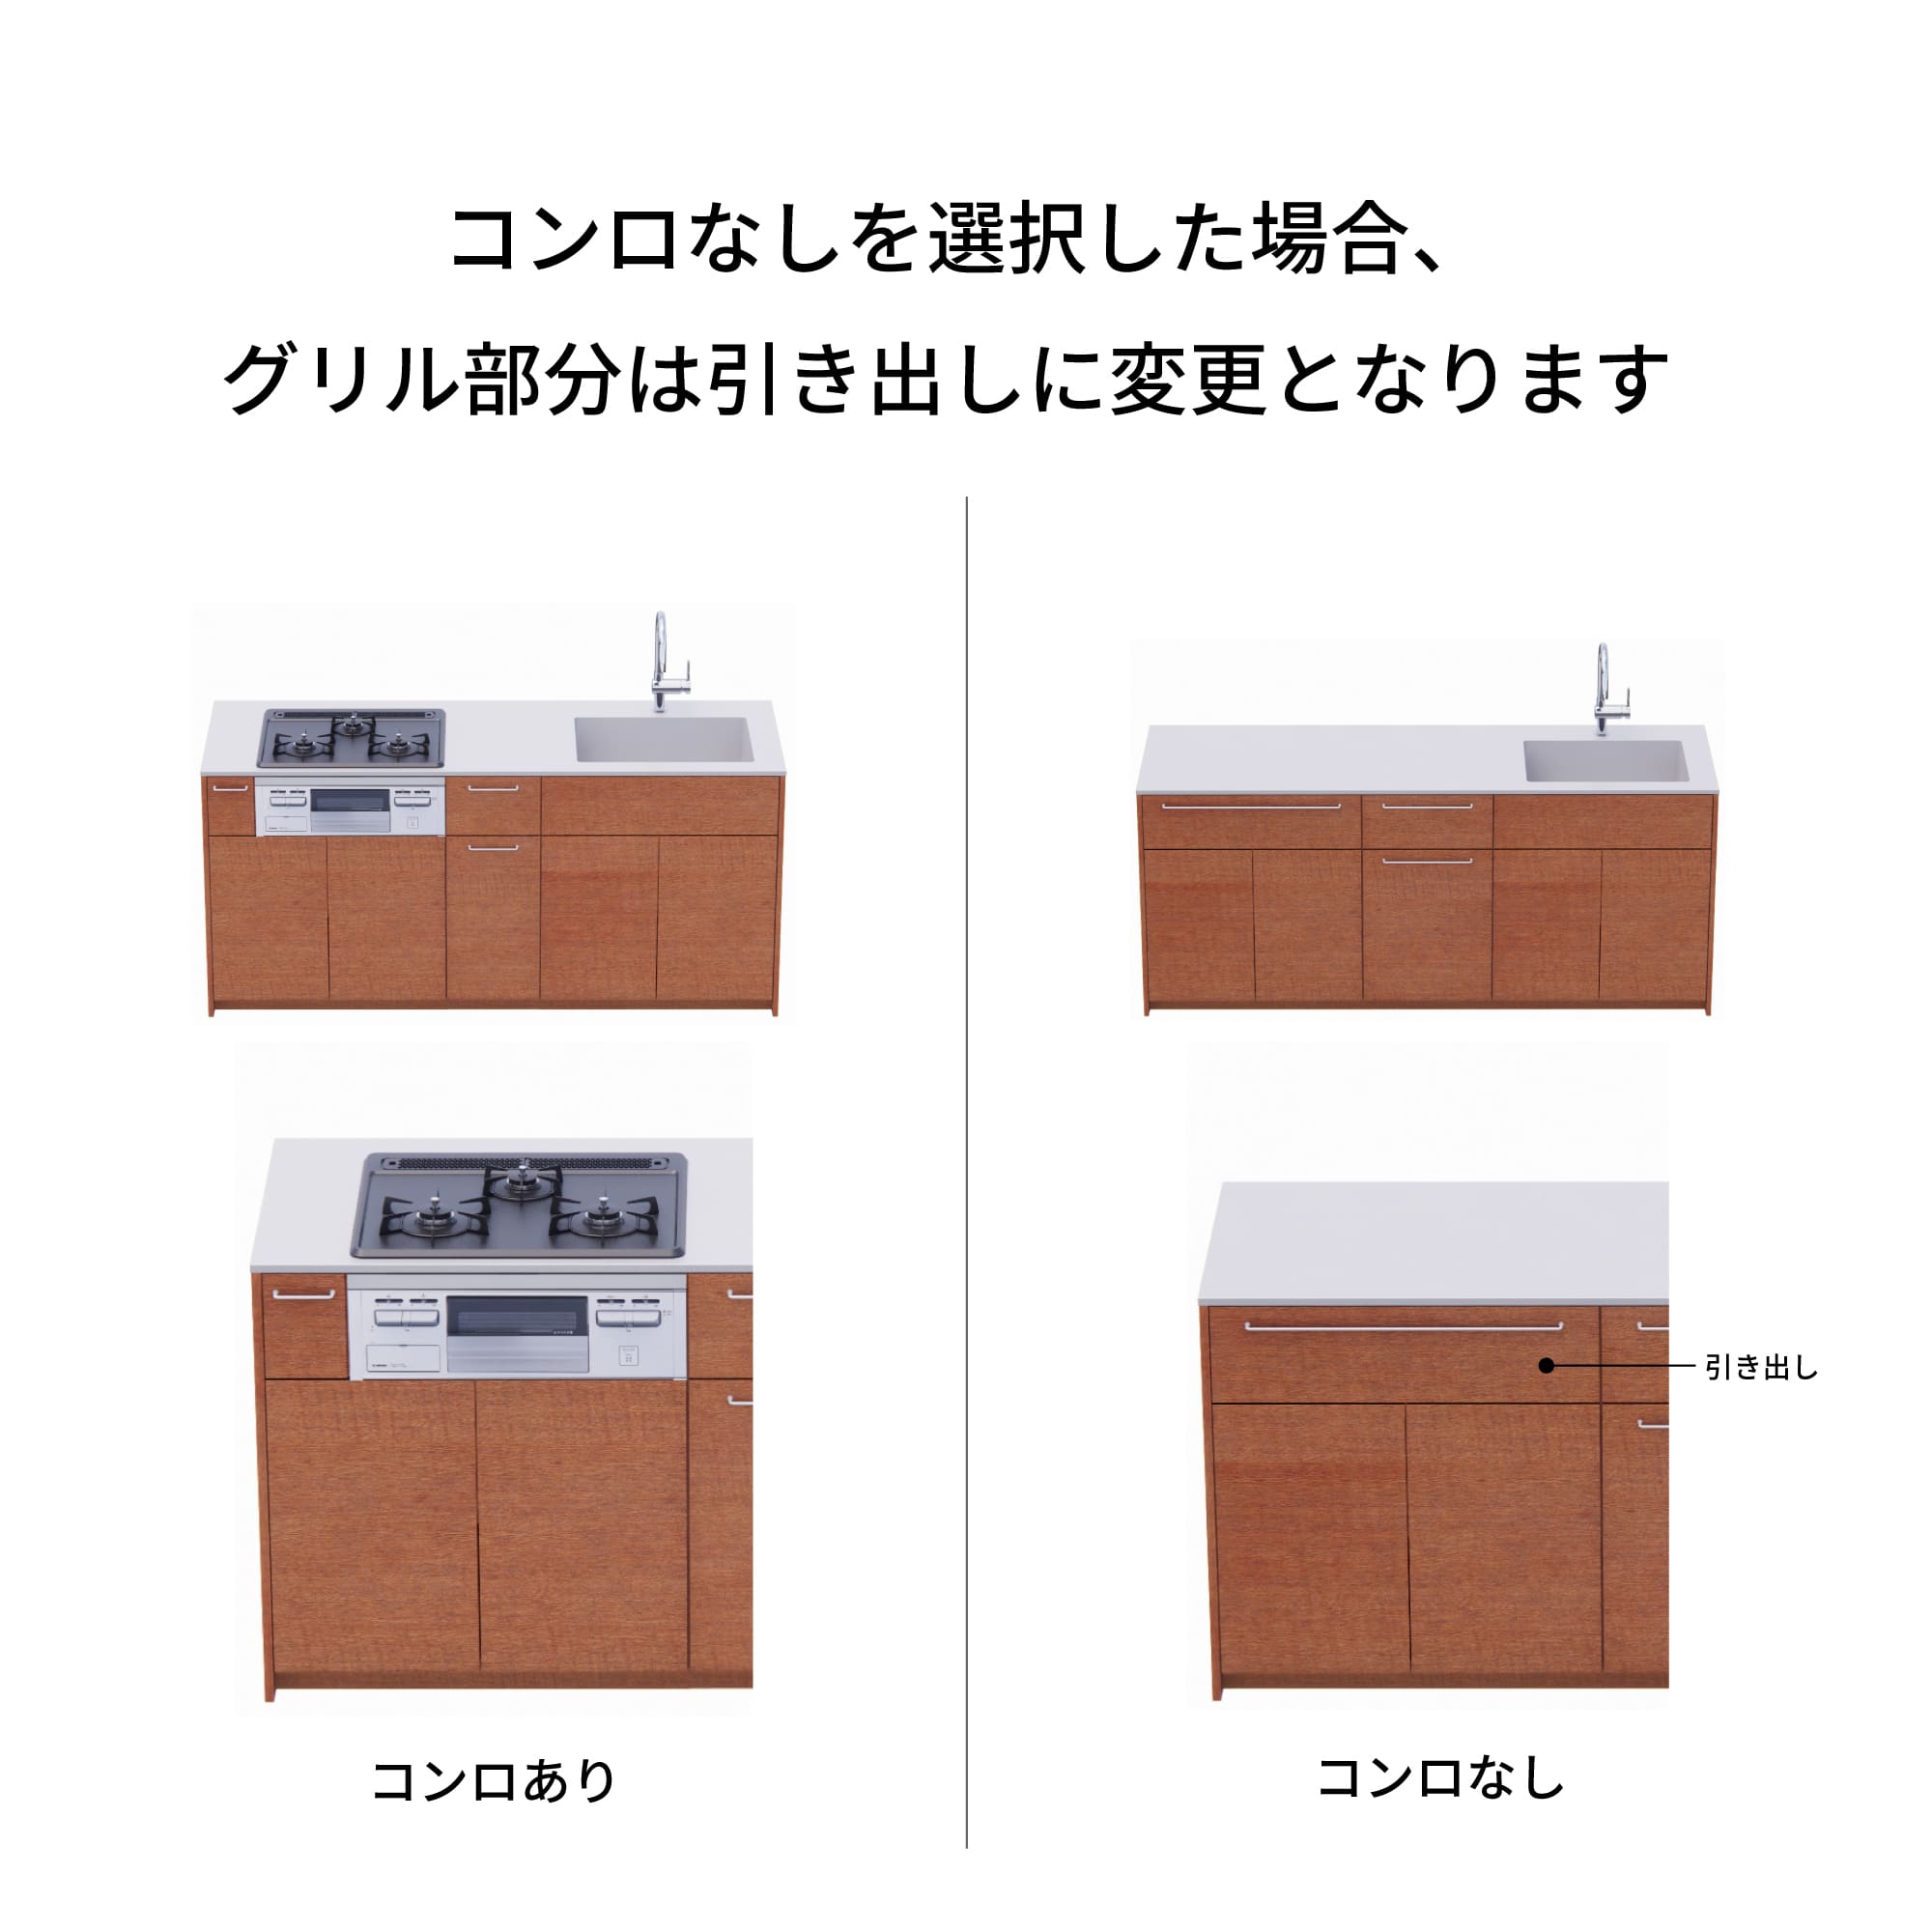 木製システムキッチン 対面型 W1990・コンロなし / オーブンなし / 食洗機なし KB-KC022-32-G183 コンロ無しの場合、通常魚焼きグリルがある部分は引き出しになっています